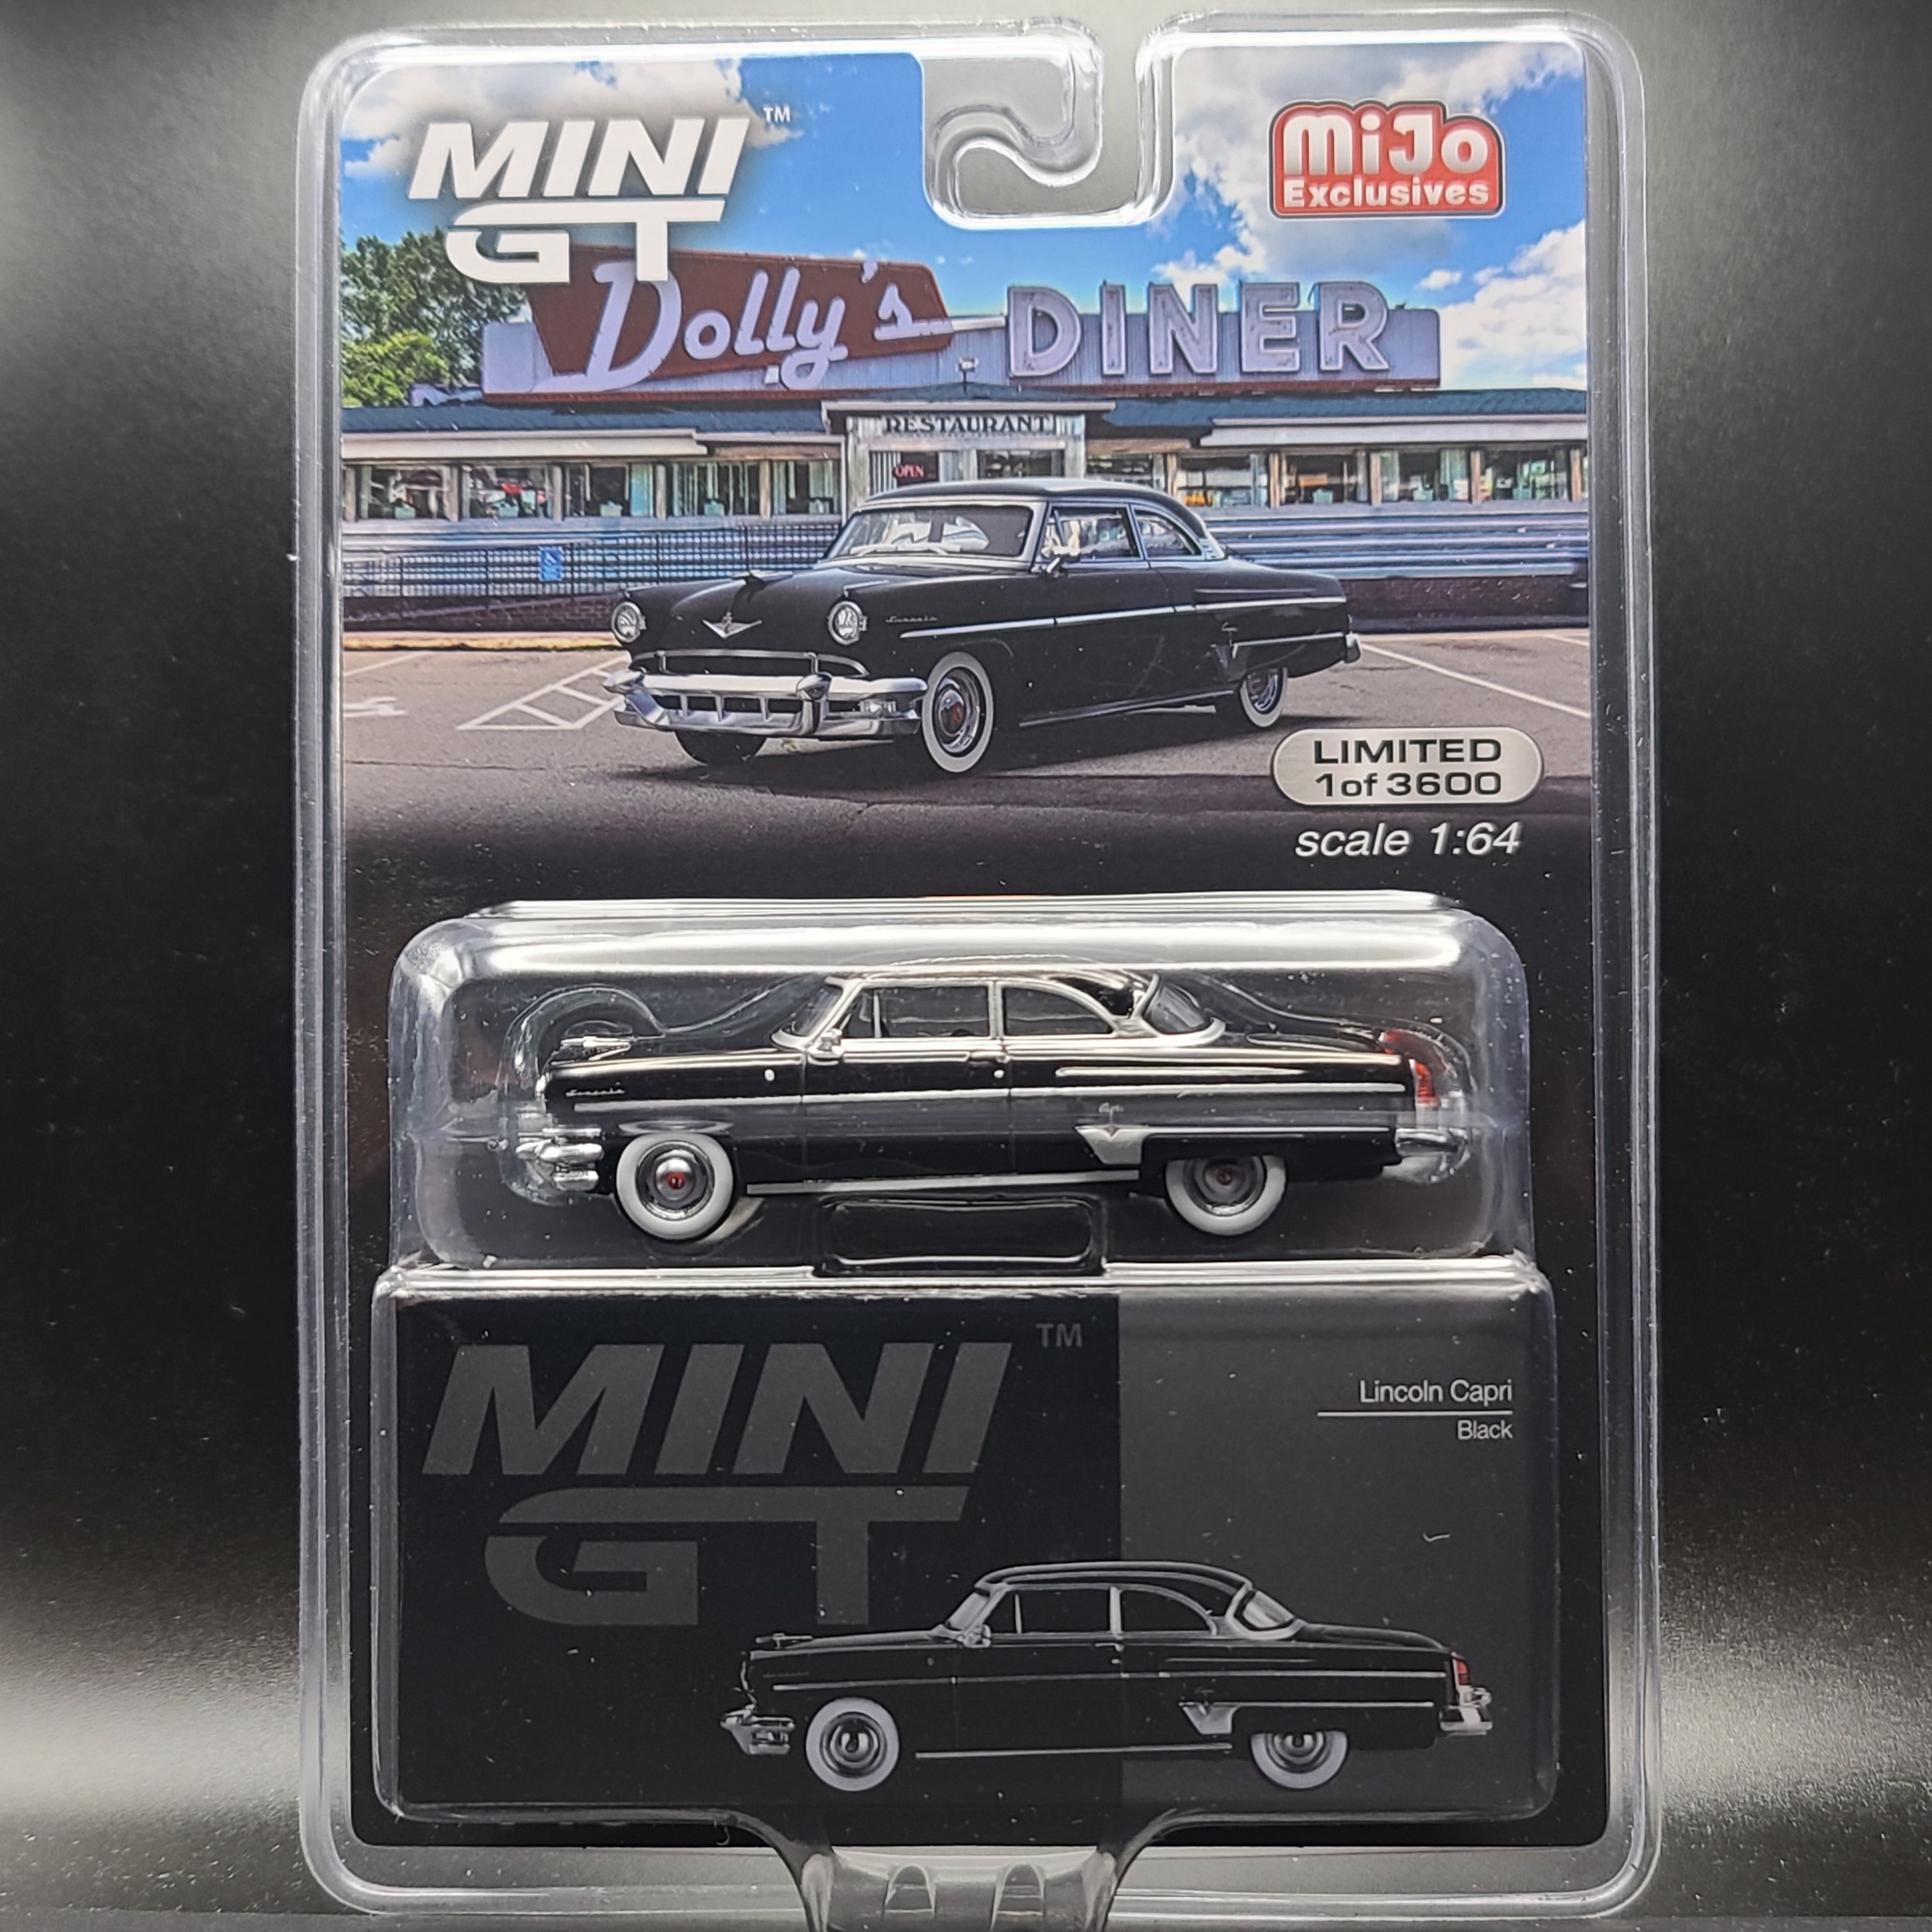 MINI GT Lincoln Capri - 1:64 scale (2023 MIJO Exclusives - Limited